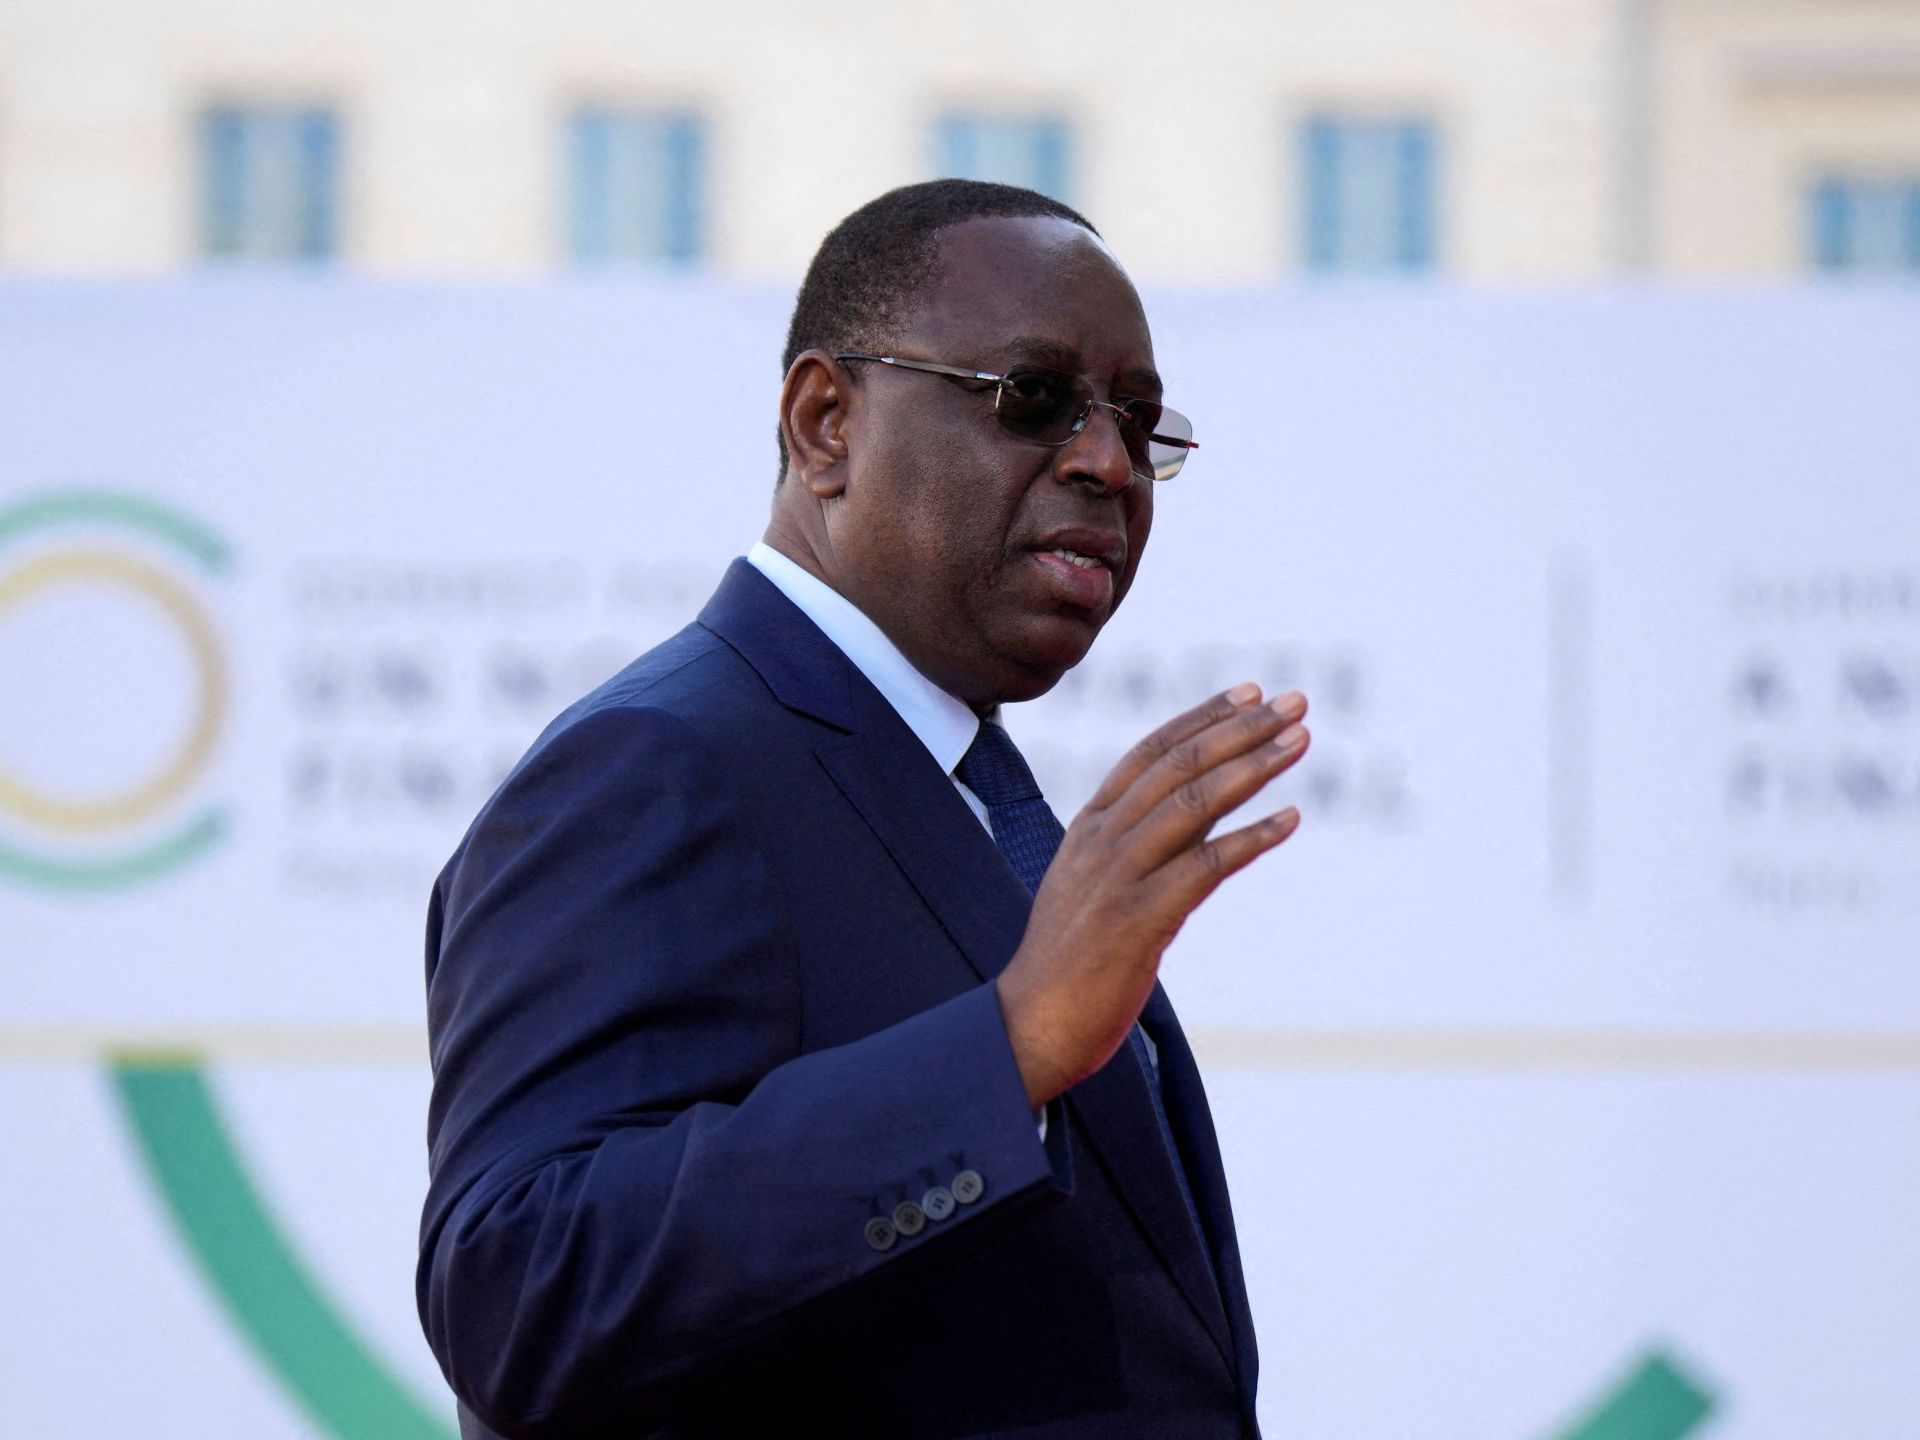 رئيس السنغال يؤكد تاريخ انتهاء ولايته ويترك موعد الانتخابات مفتوحا | أخبار – البوكس نيوز